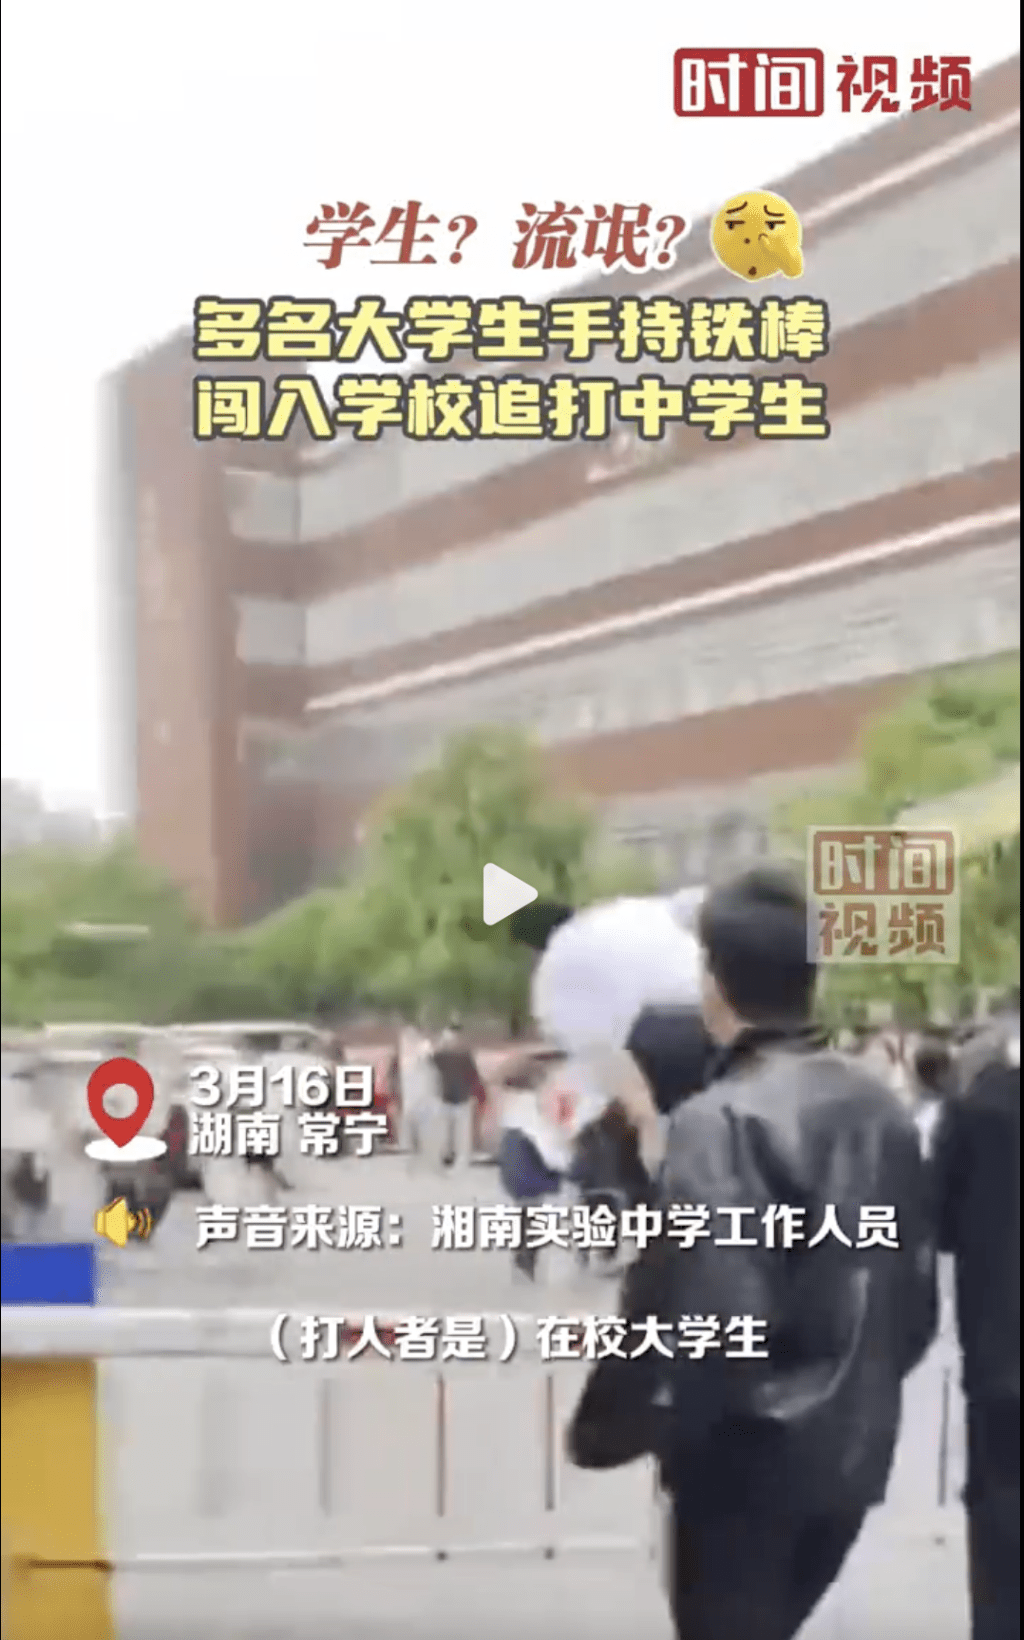 湖南7大学生手持铁棍闯校园追打中学生被拘。